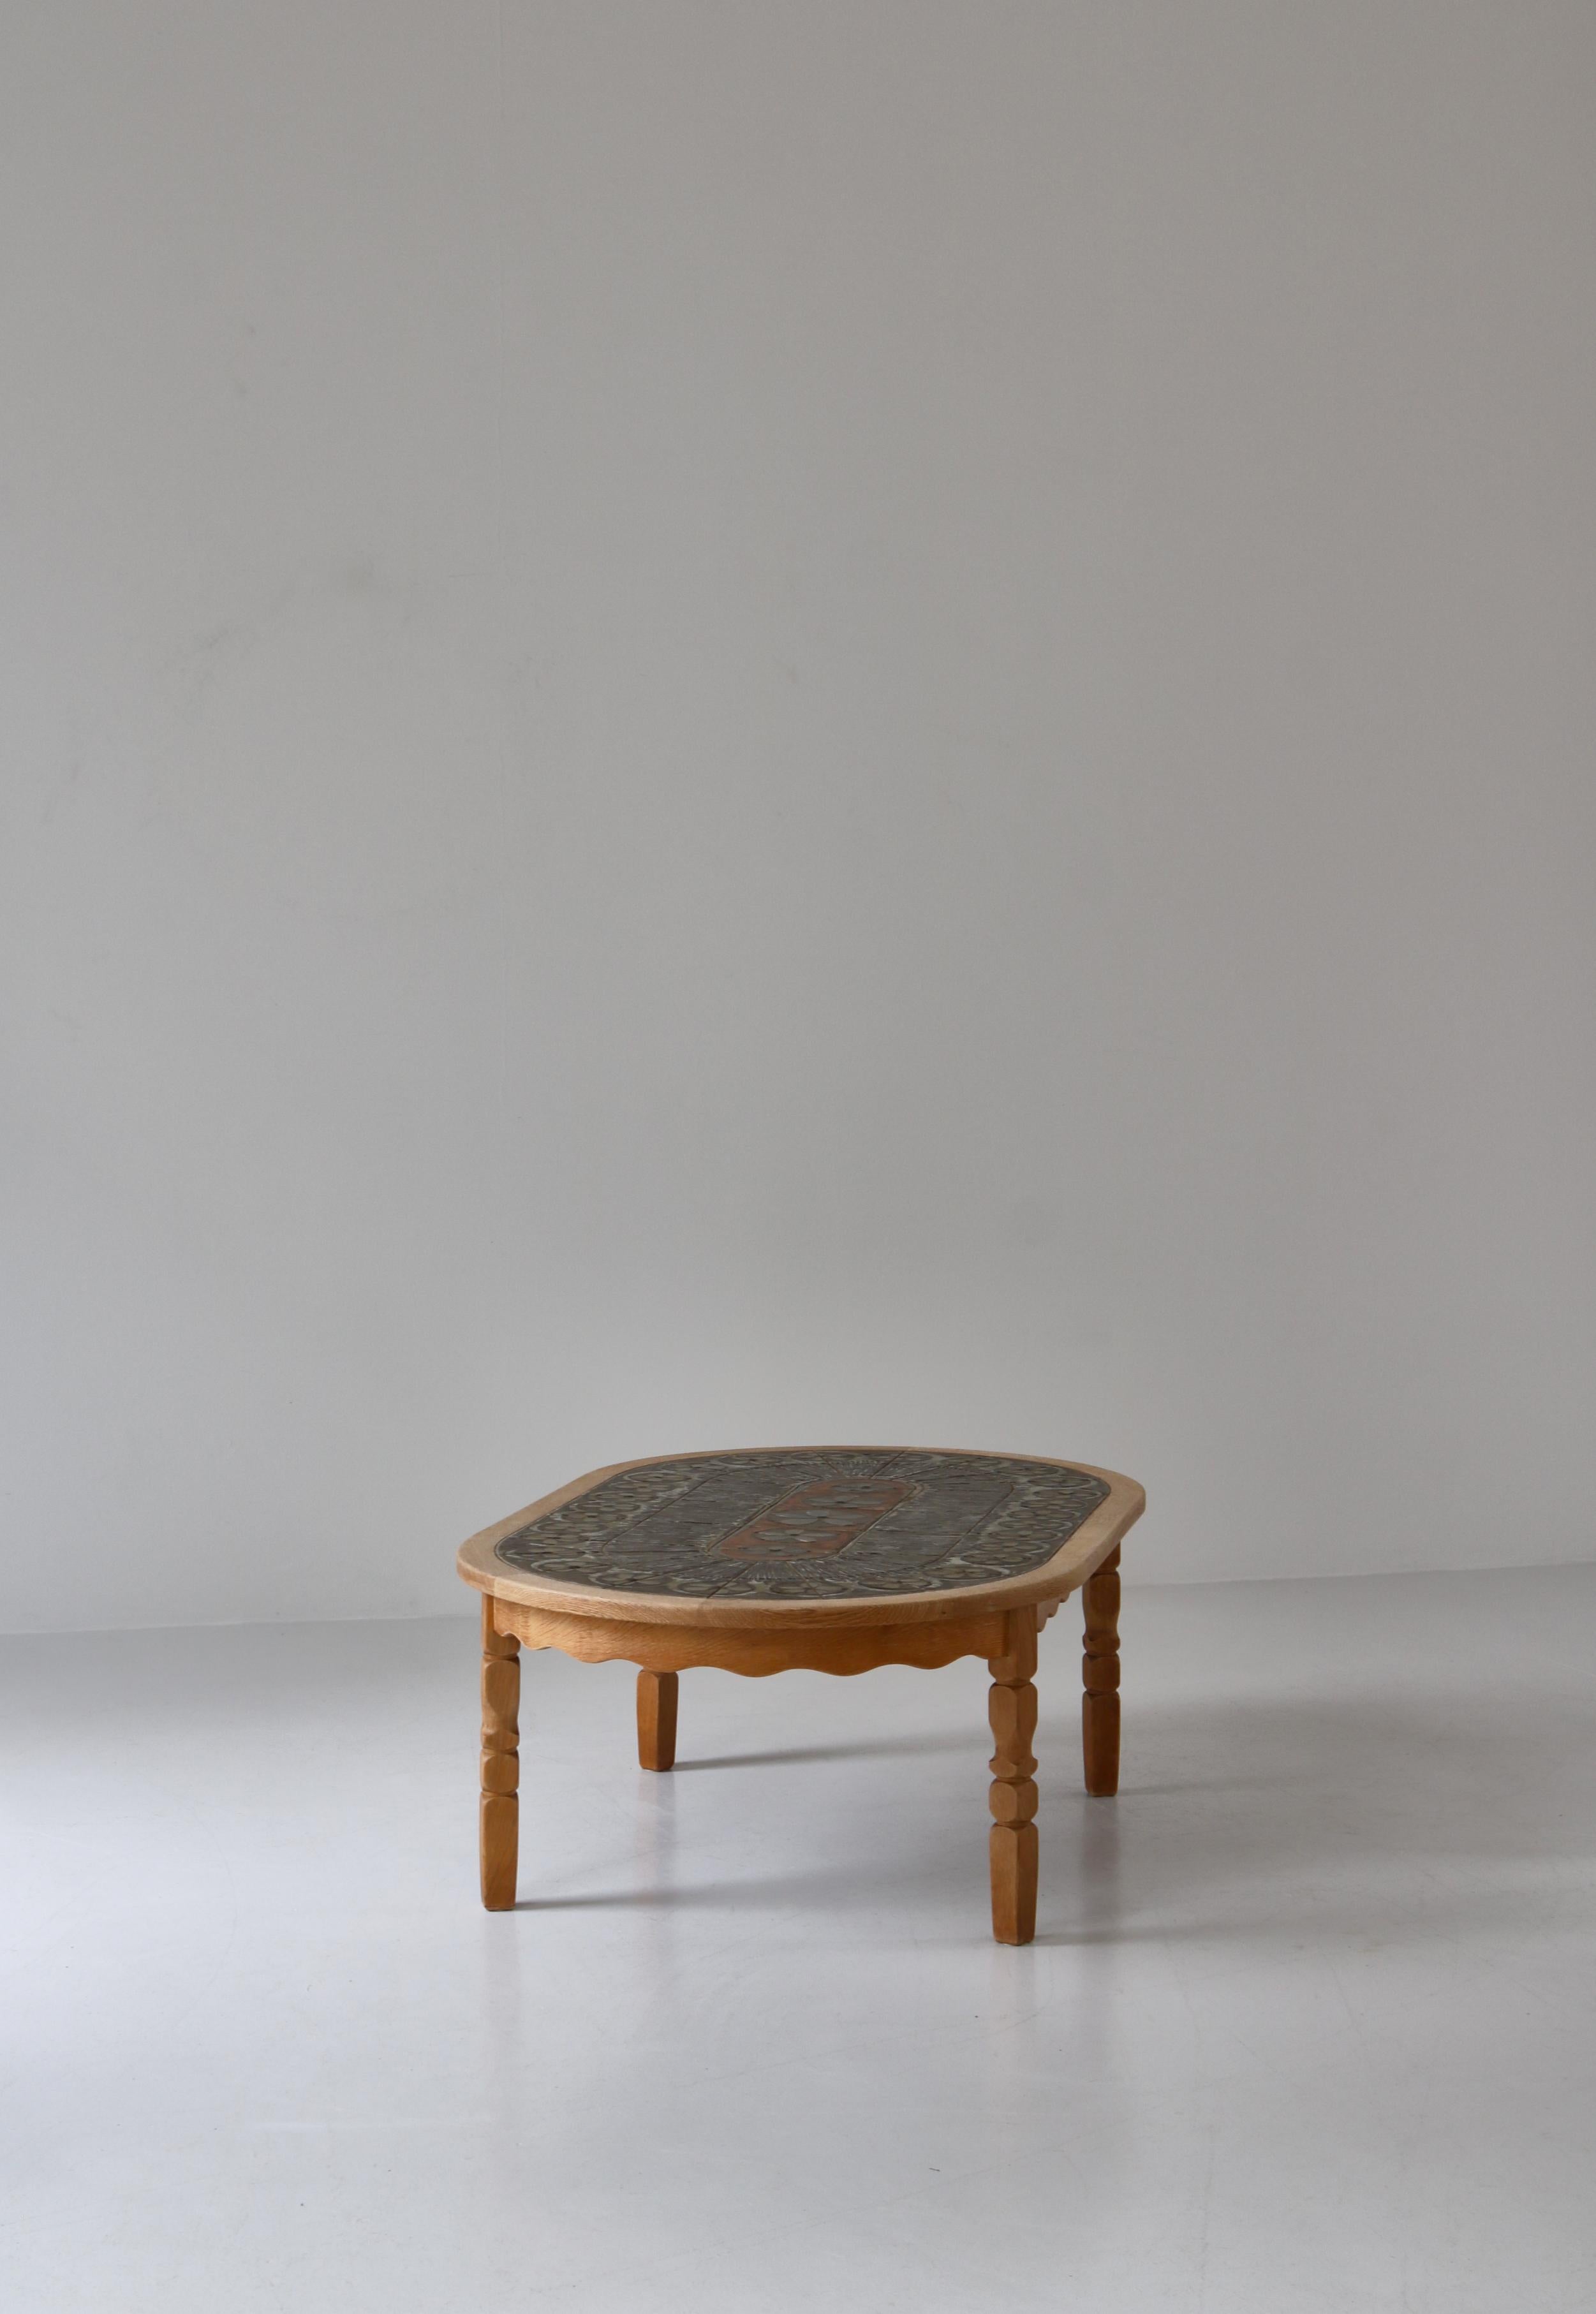 Danish Modern Oval Coffee Table in Oak & Ceramic Tiles by Henry Kjærnulf, 1960s For Sale 4